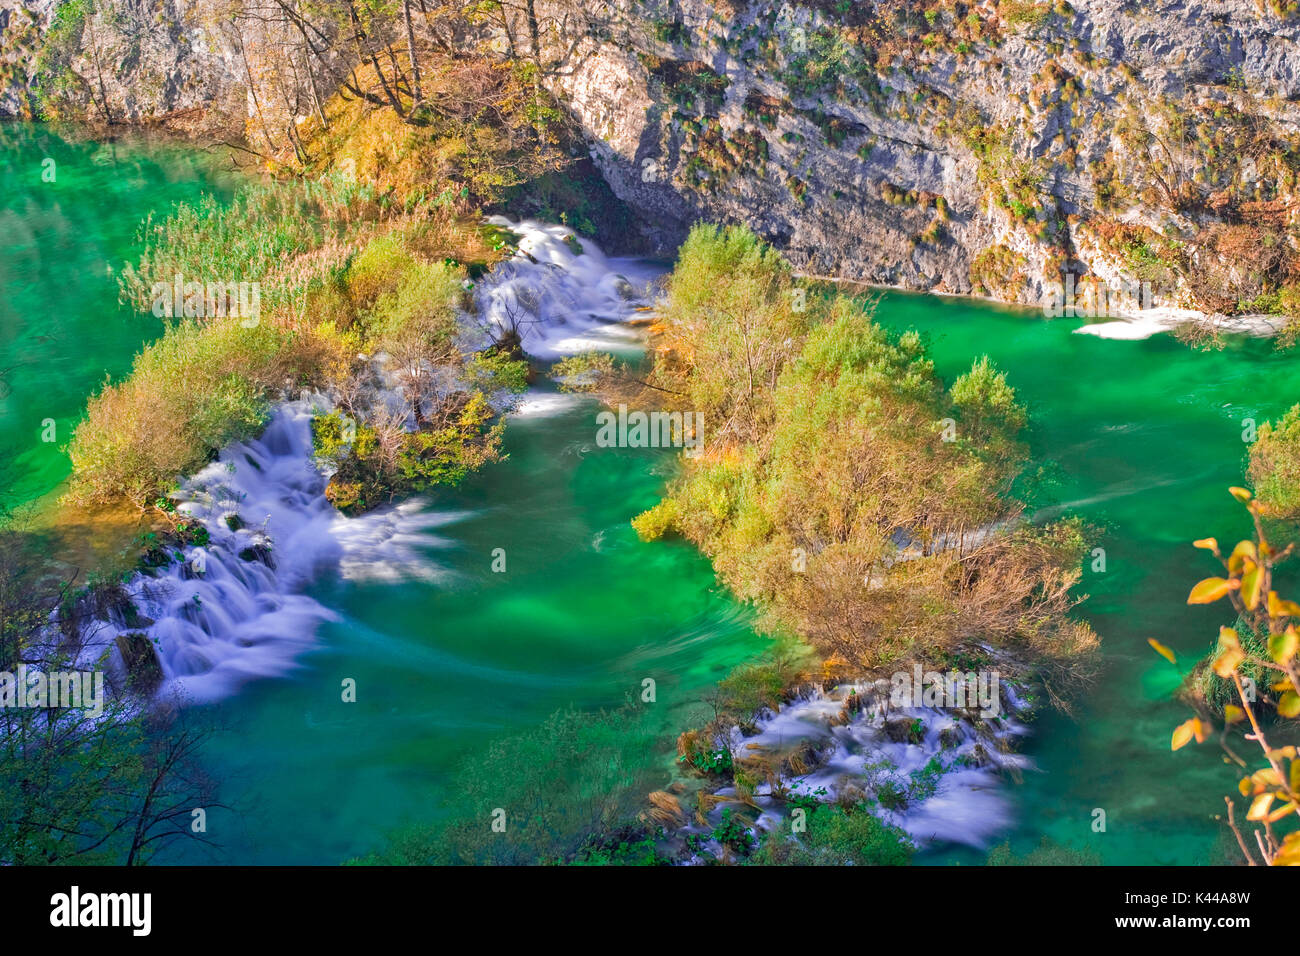 Le parc national des Lacs de Plitvice en Croatie est située dans une zone de forêts denses , riche en rivières, lacs et cascades, et surtout en automne, la création d'un paradis d'une extraordinaire beauté naturelle qui fait partie de la liste de patrimoine mondial de l'UNESCO. Banque D'Images